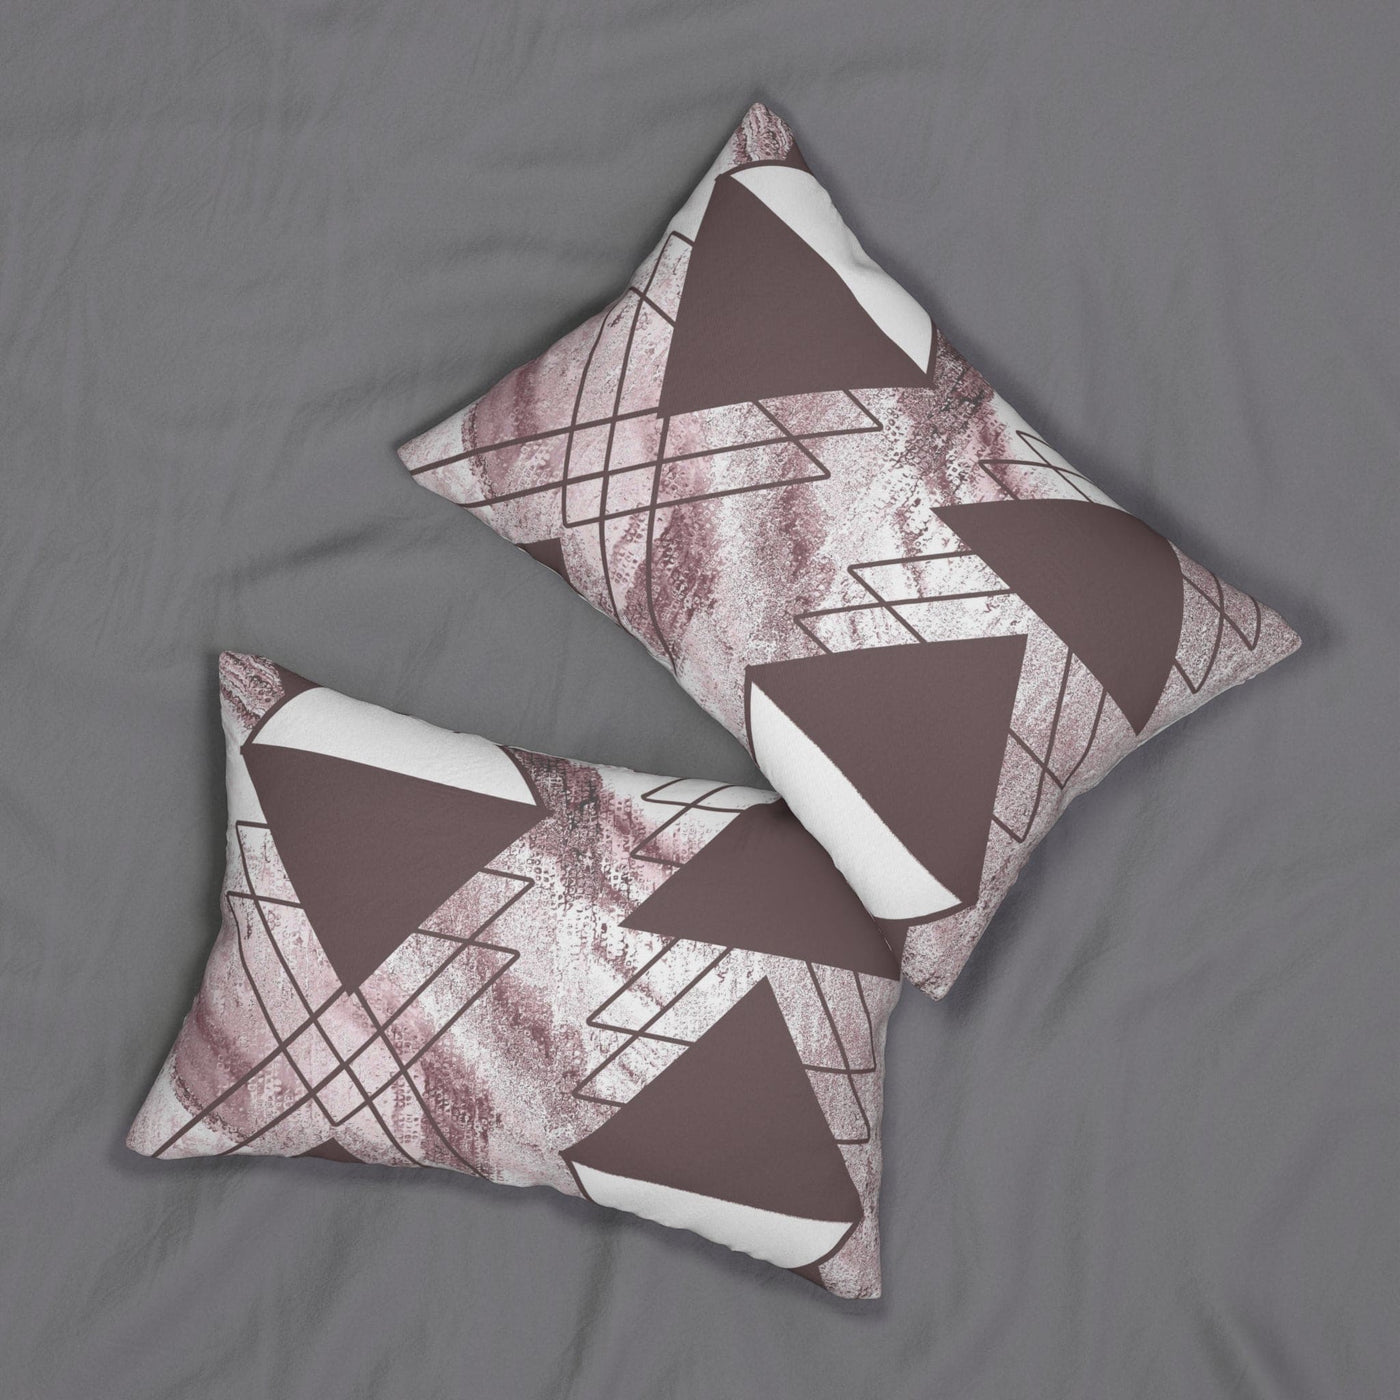 Decorative Lumbar Throw Pillow - Mauve Rose And White Triangular Colorblock